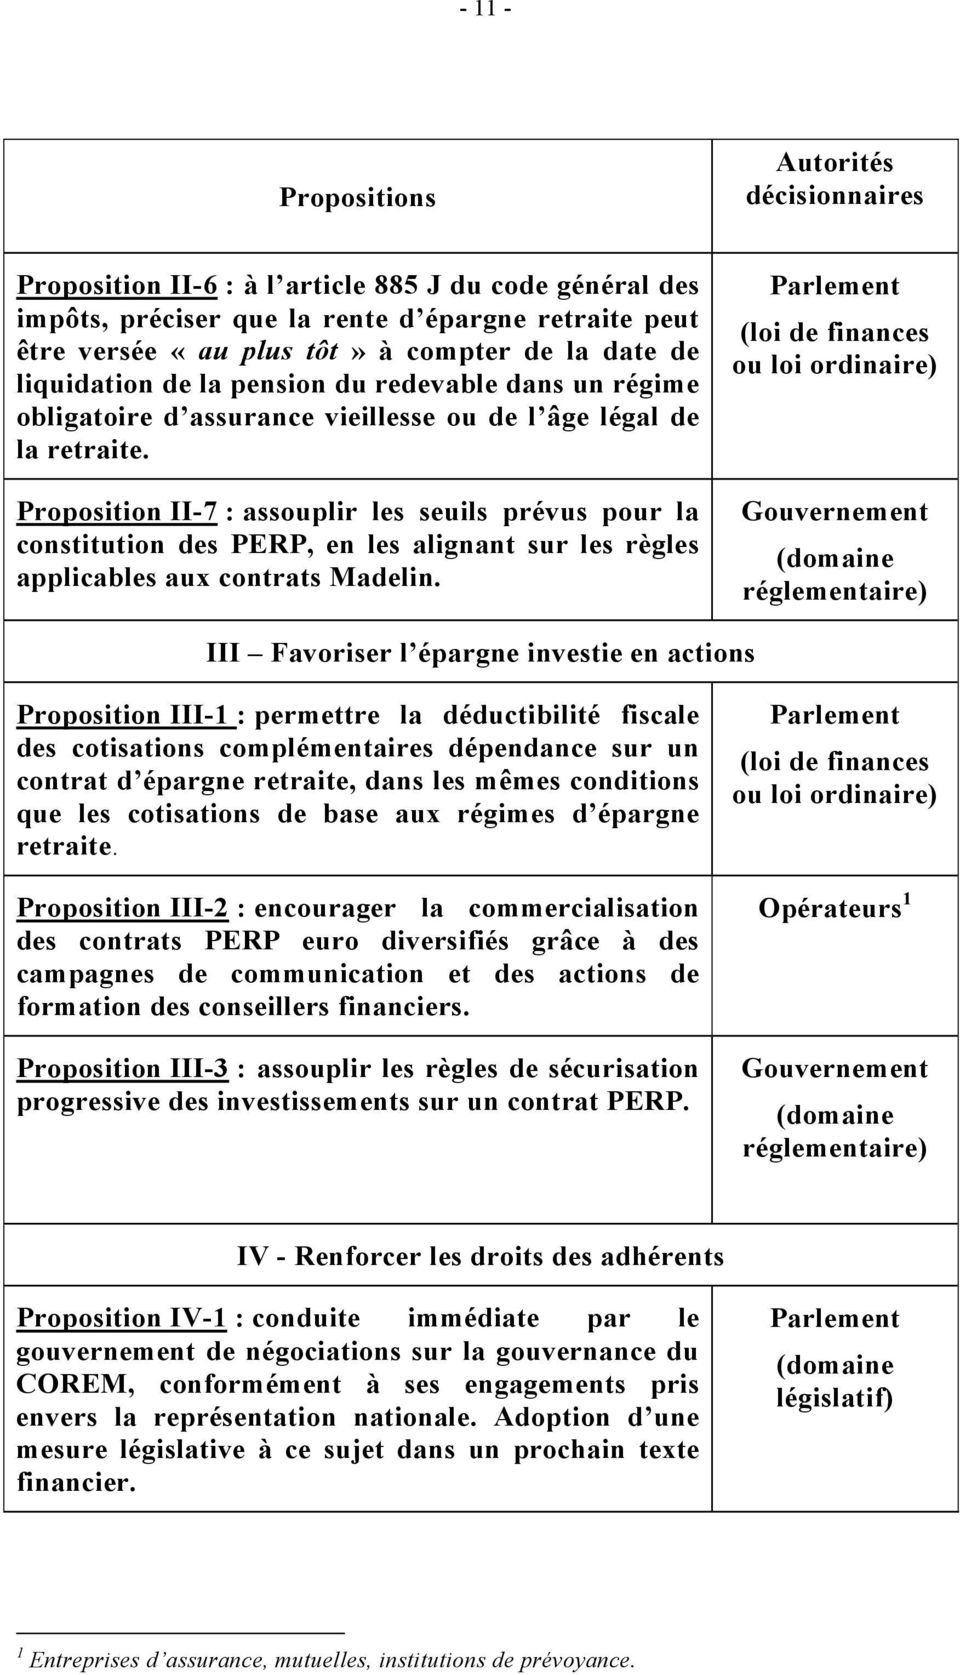 Proposition II-7 : assouplir les seuils prévus pour la constitution des PERP, en les alignant sur les règles applicables aux contrats Madelin.